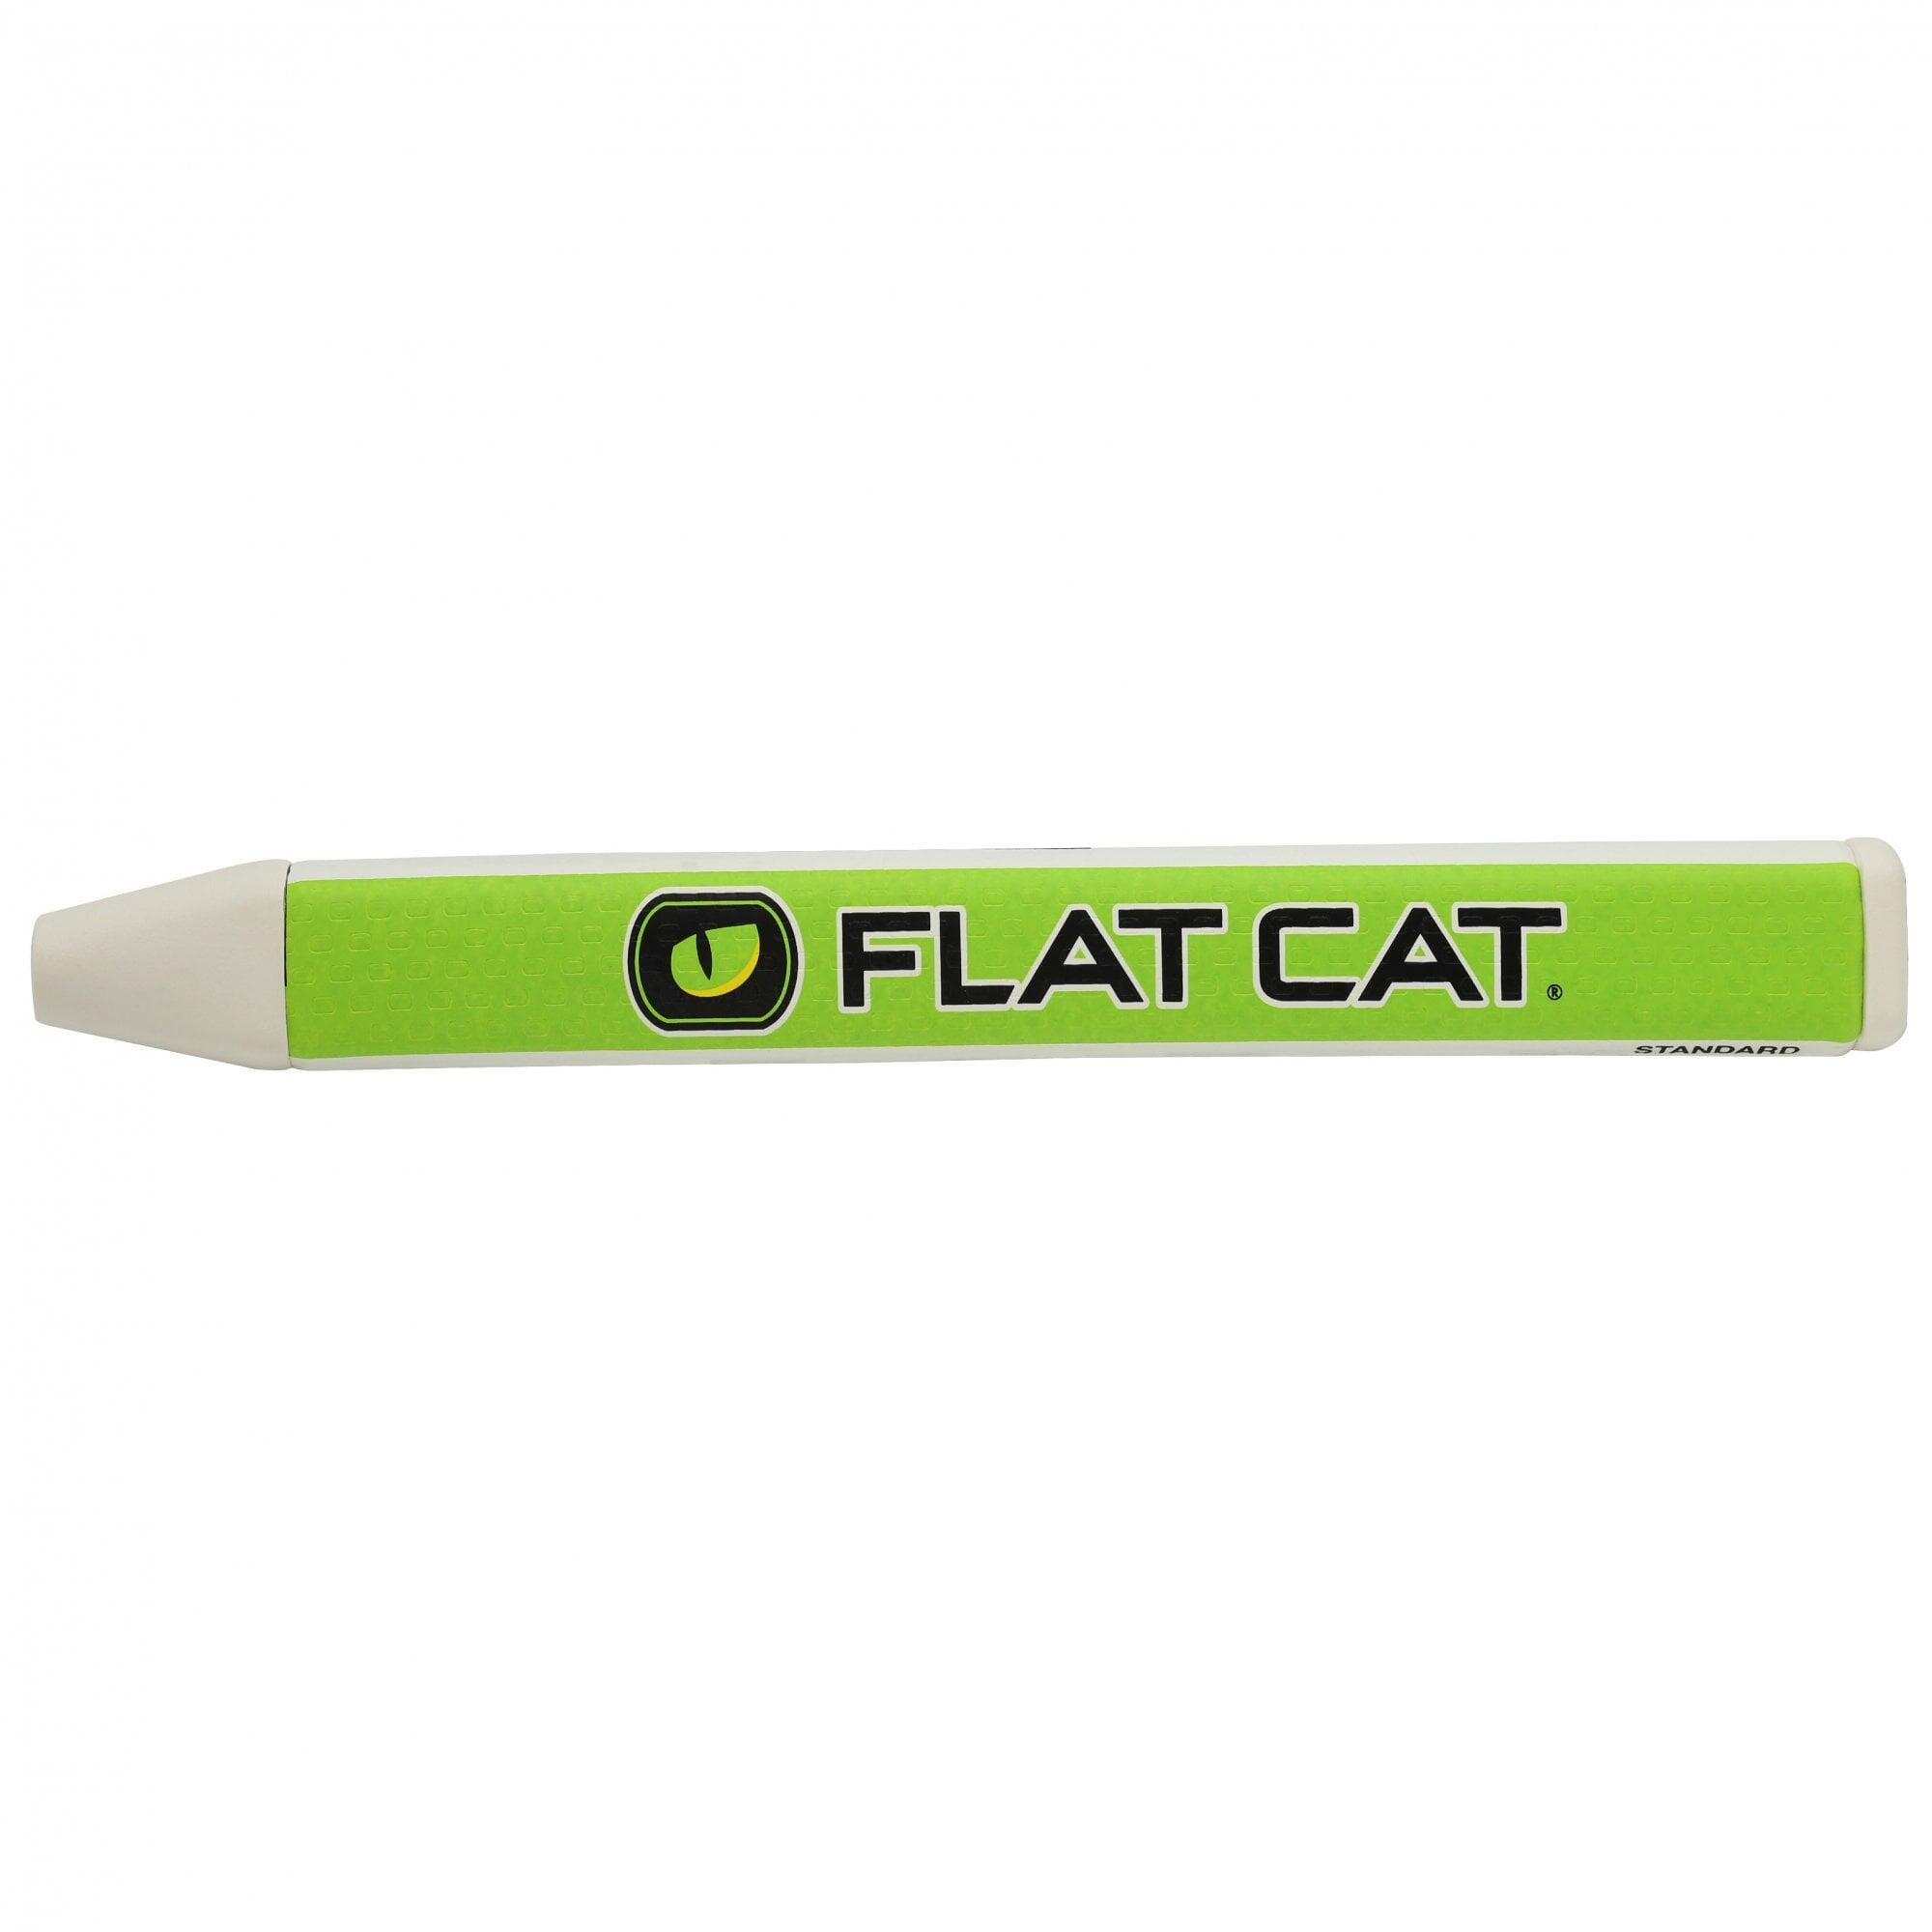 FLAT CAT Flat Cat Original  Putter Grip - Standard